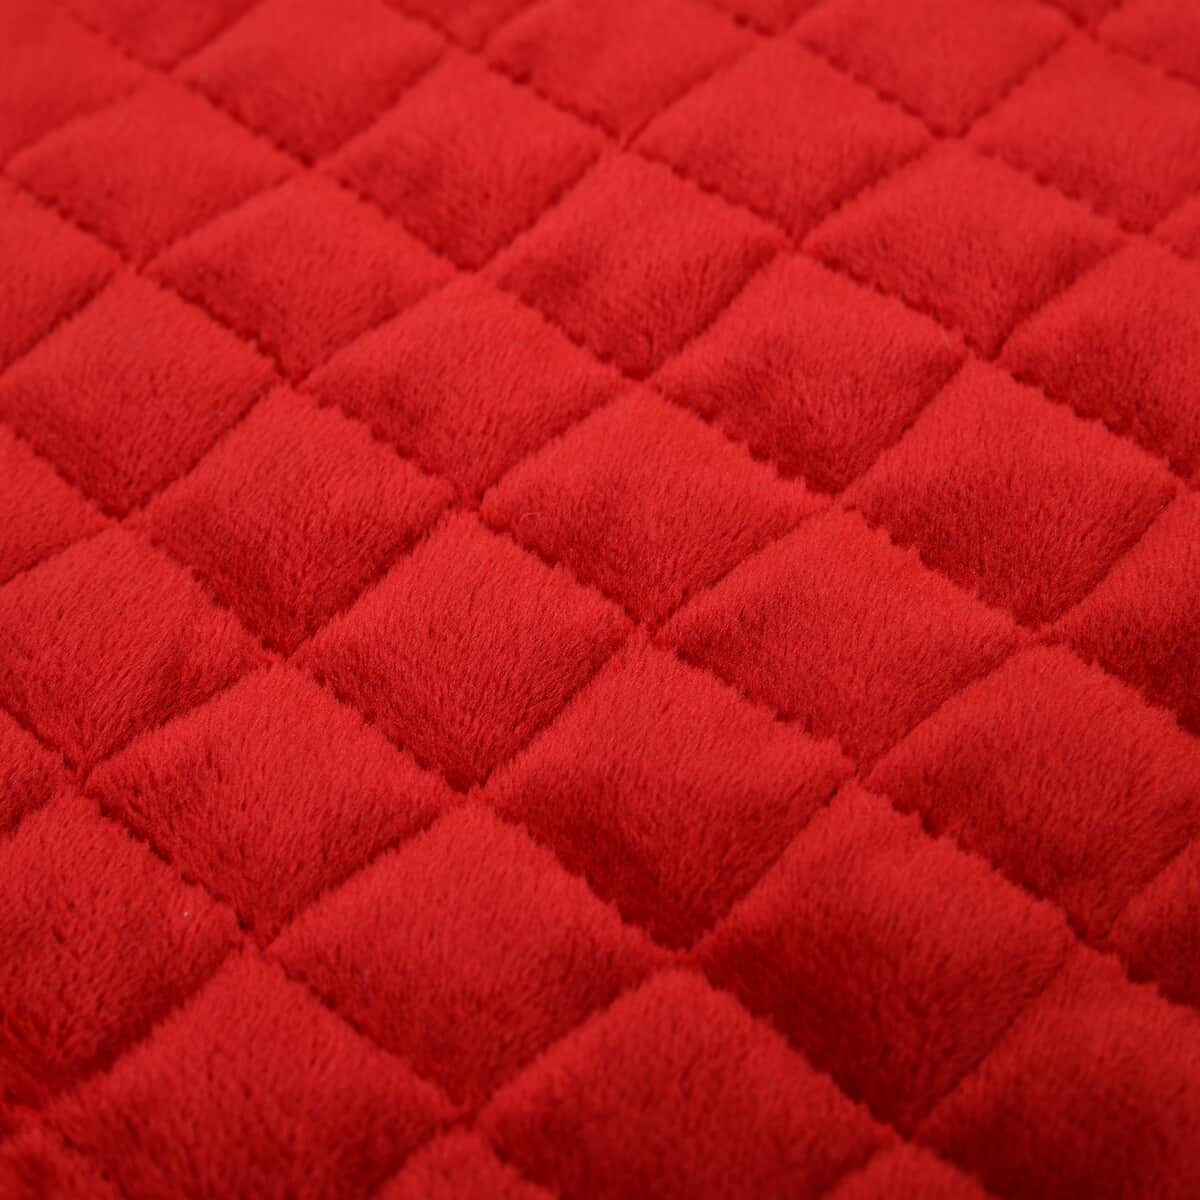 Homesmart Red Ultra Soft Crystal Velvet 3pcs Comforter Set - King image number 5